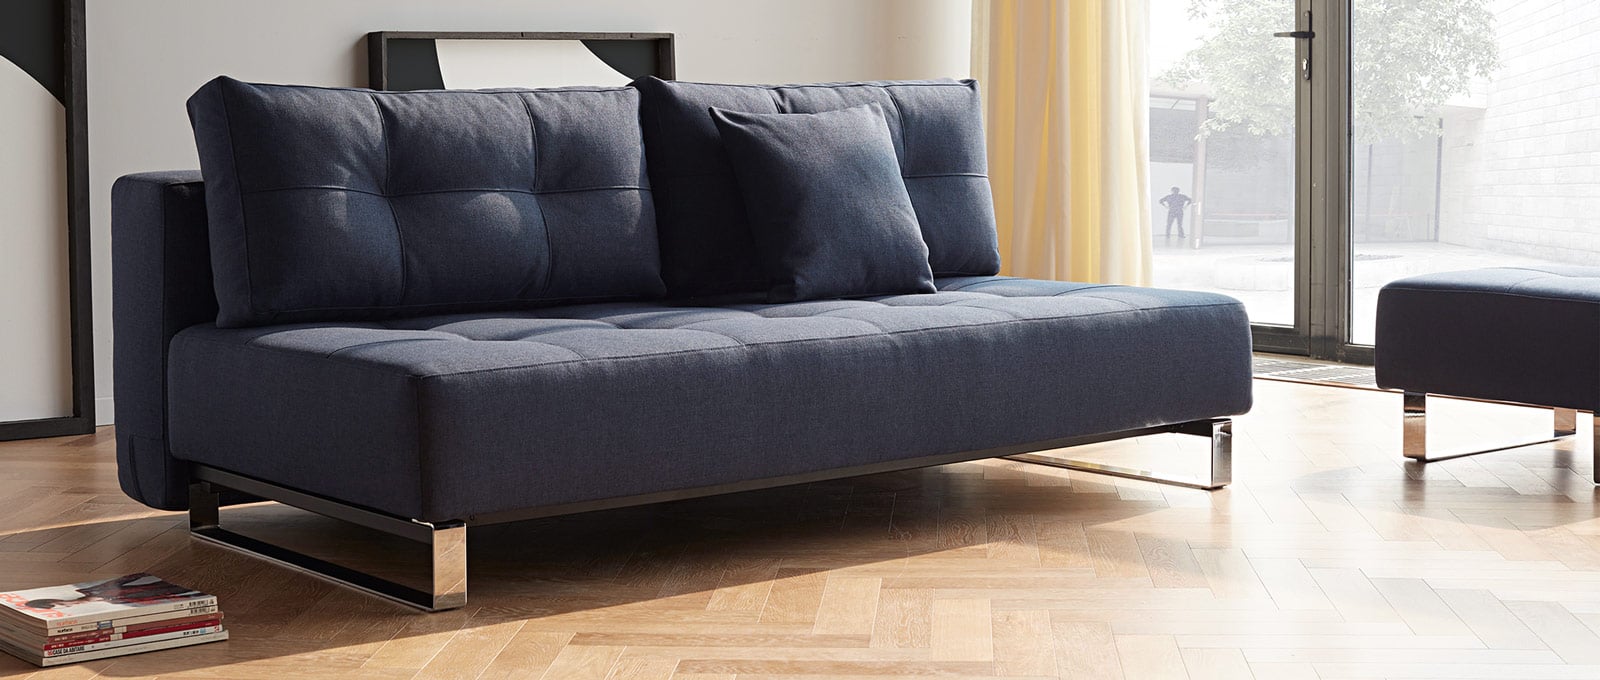 Blaues Schlafsofa SUPREMAX DELUXE EXCESS von Innovation, Lounge Sofa Gästebett - Liegefläche 155x200 cm